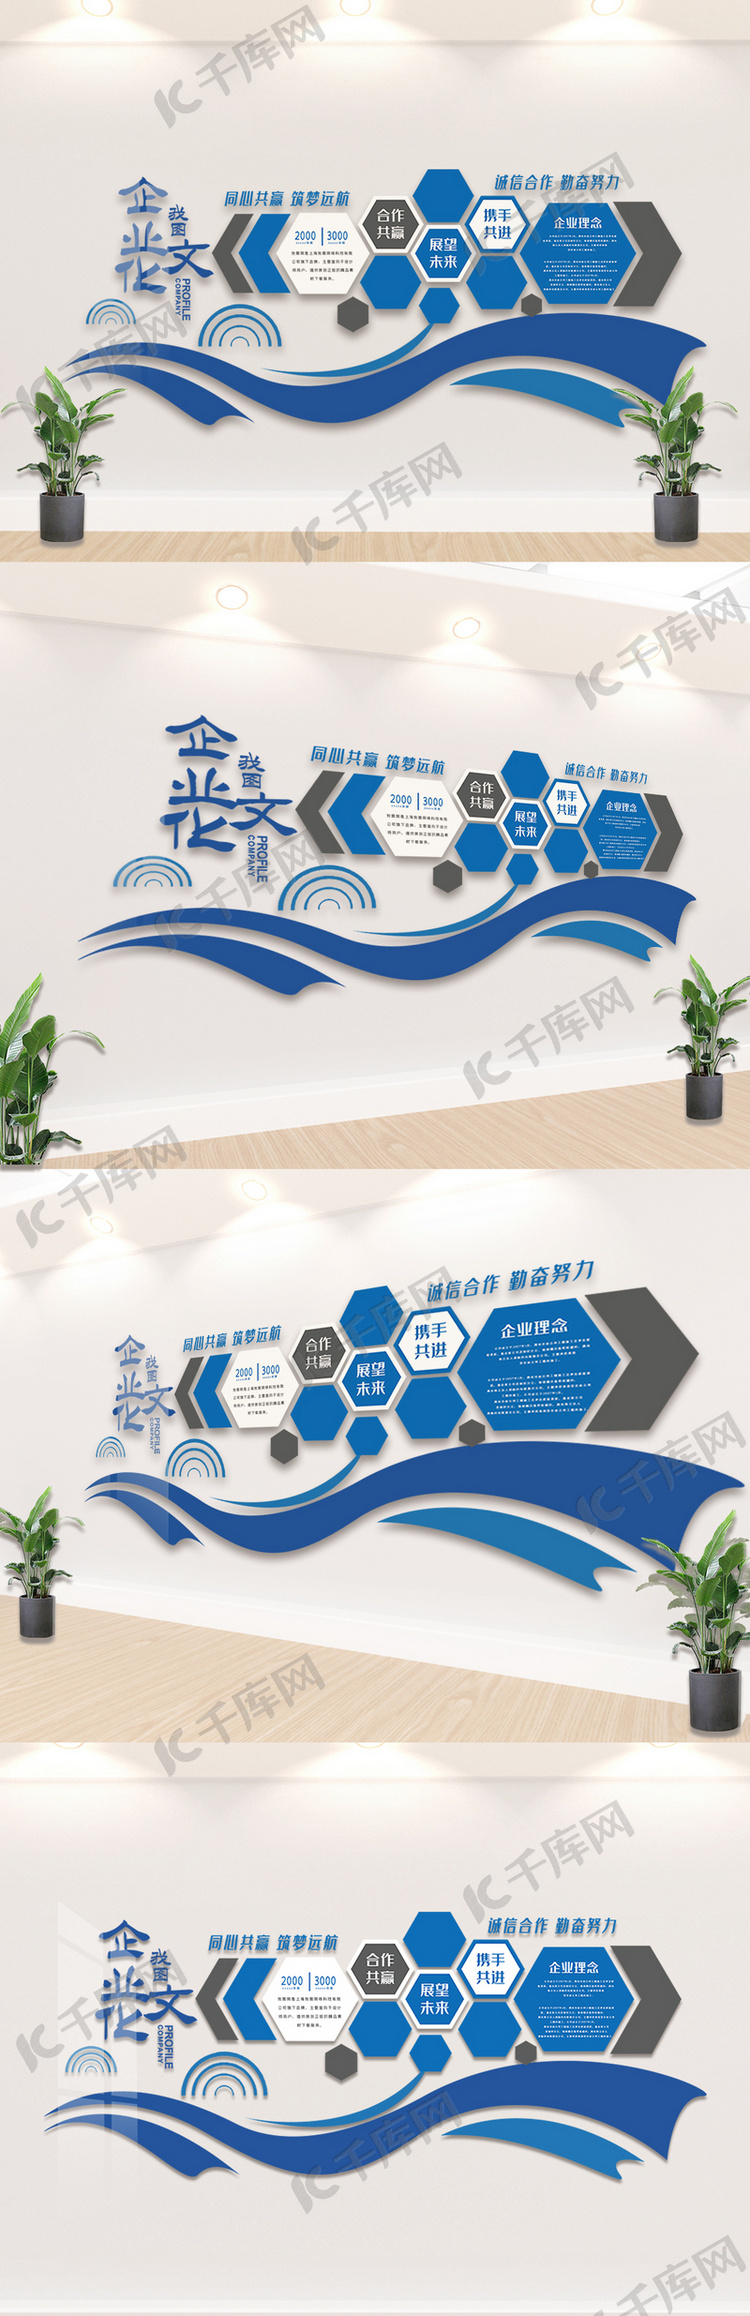 蓝色企业宣传文化墙设计模板素材